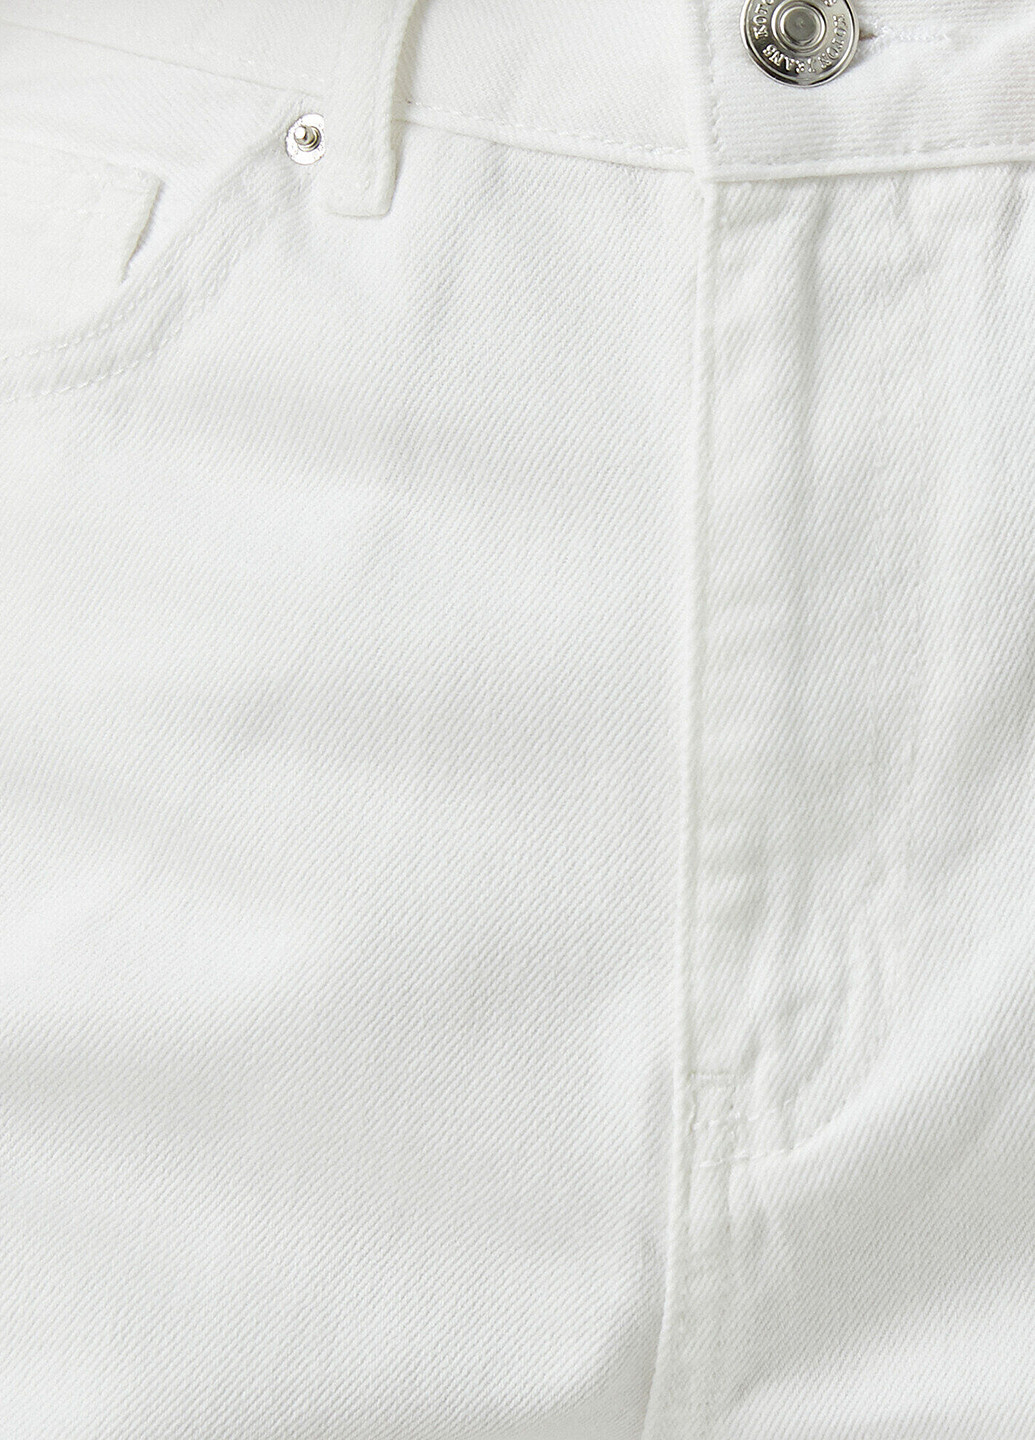 Шорты KOTON однотонные белые джинсовые хлопок